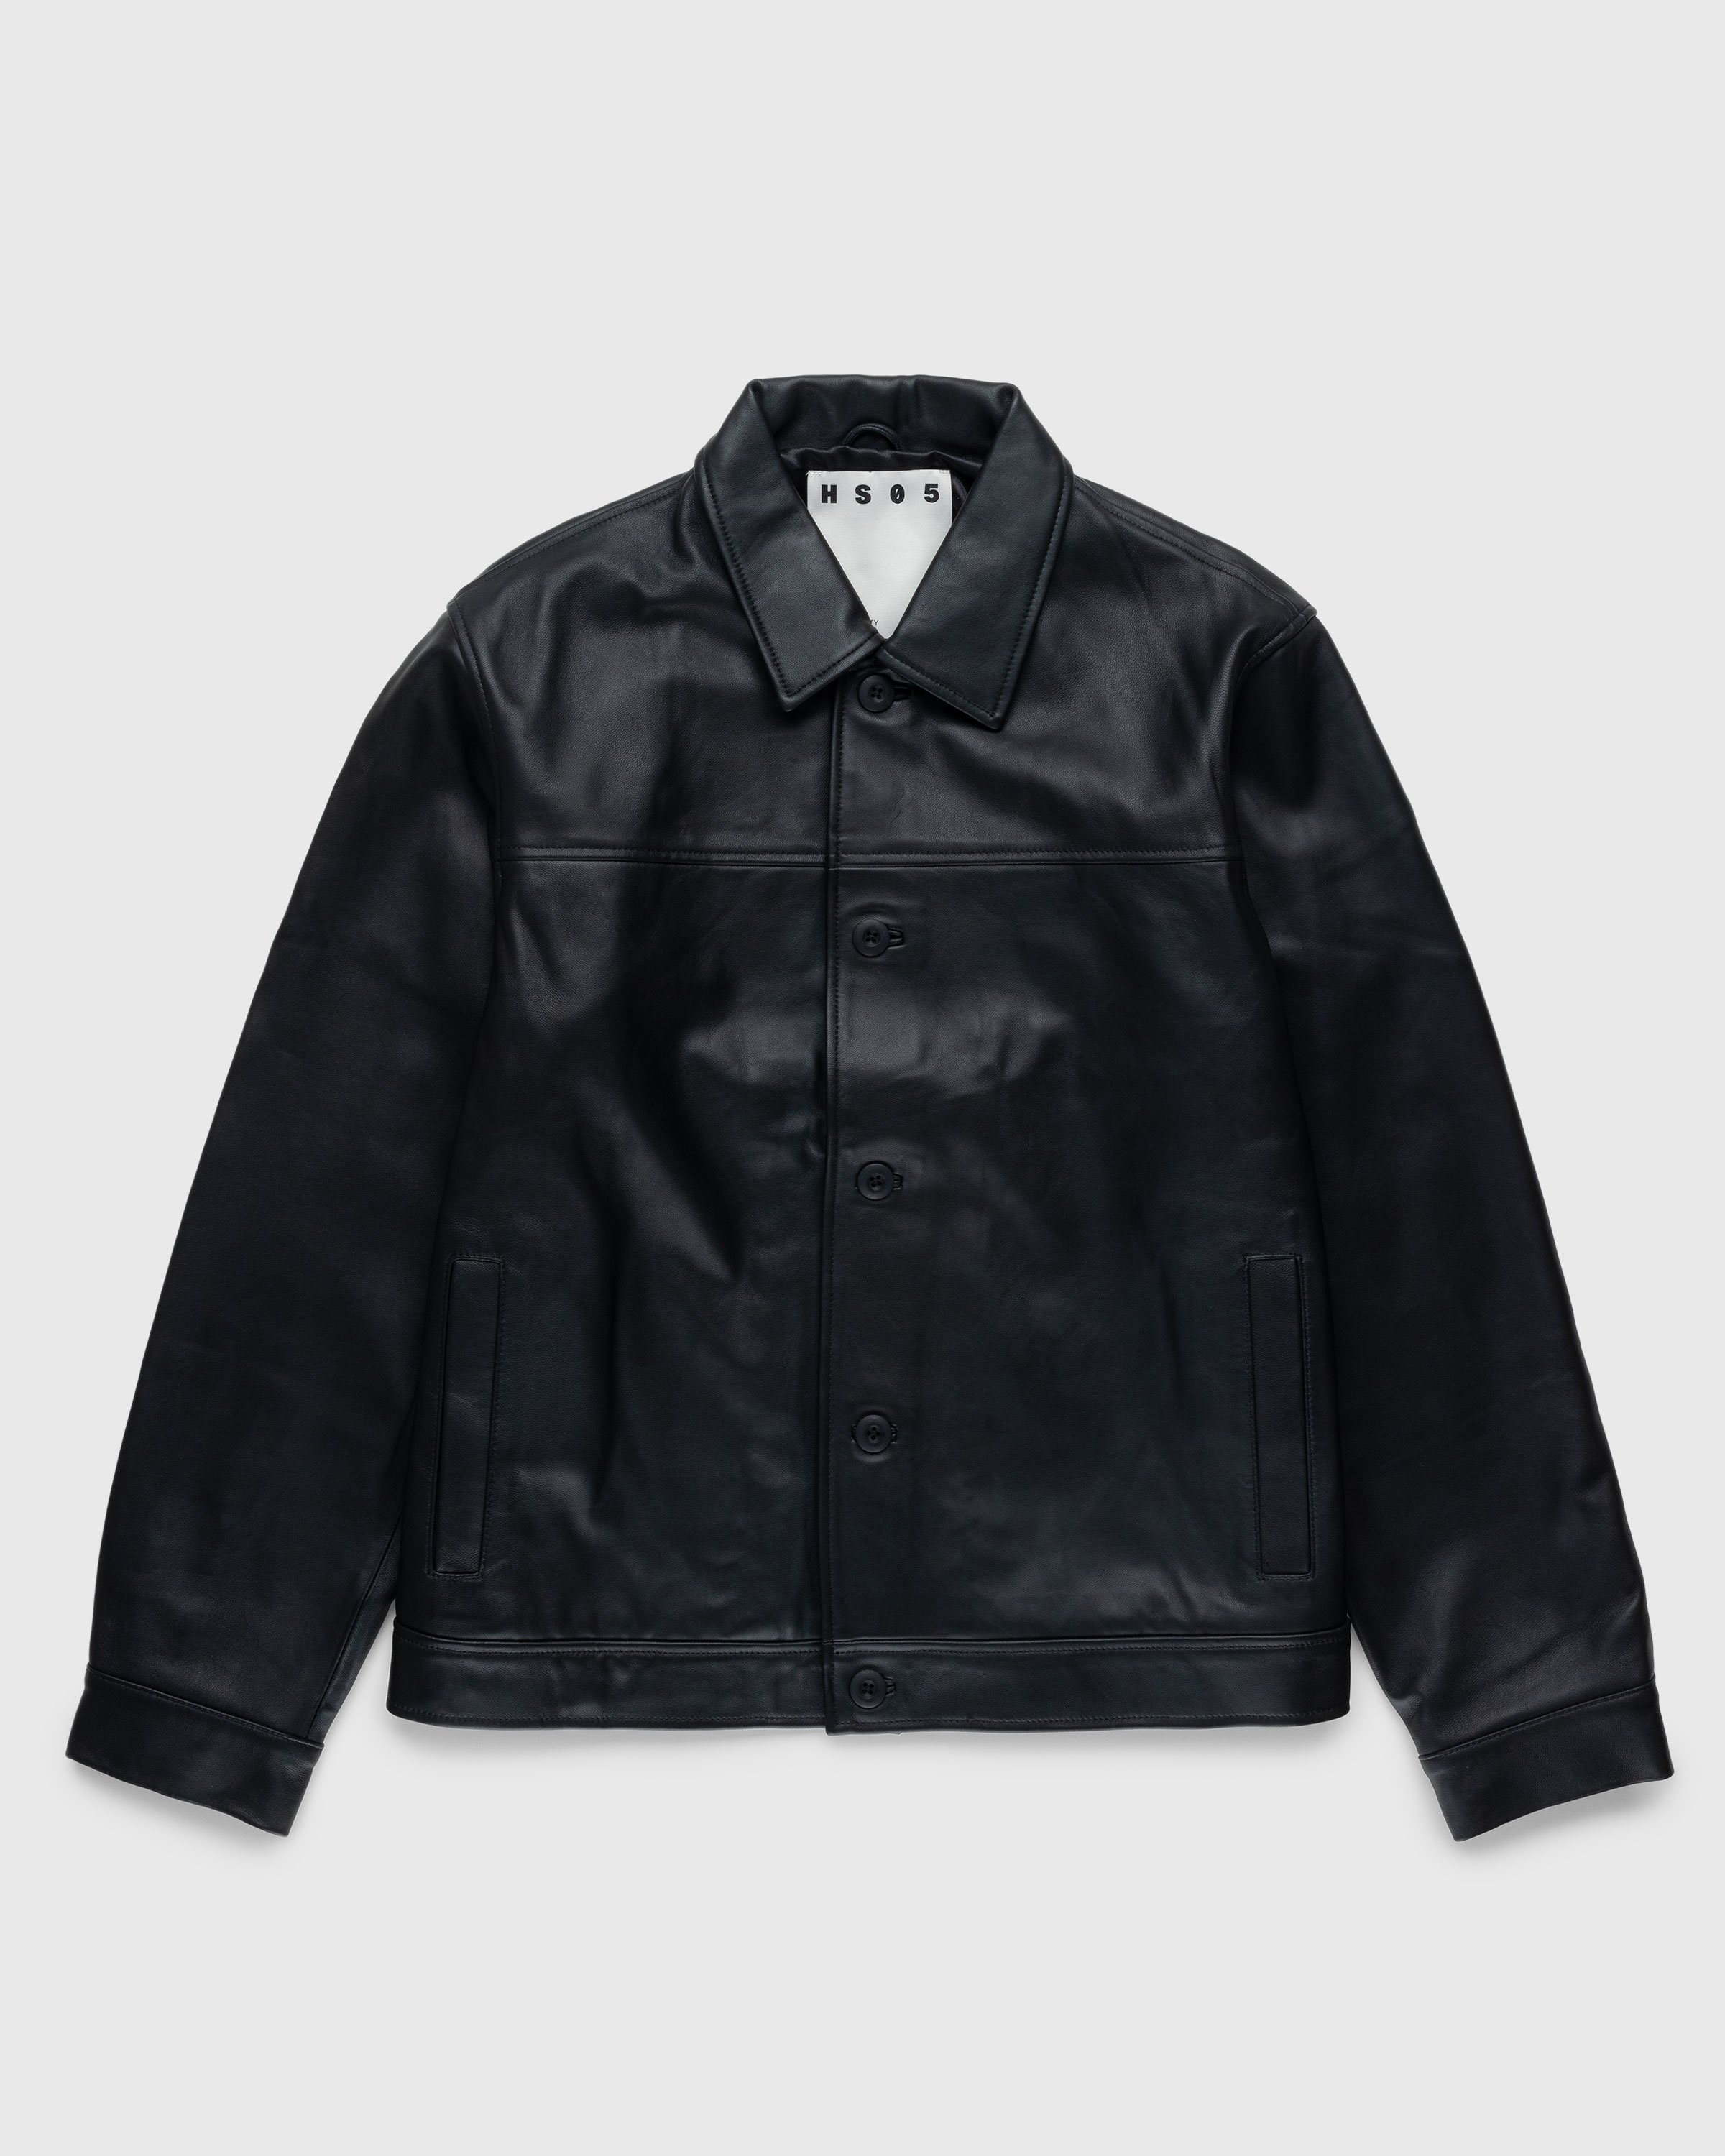 Highsnobiety HS05 - Leather Jacket Black - Clothing - Black - Image 1